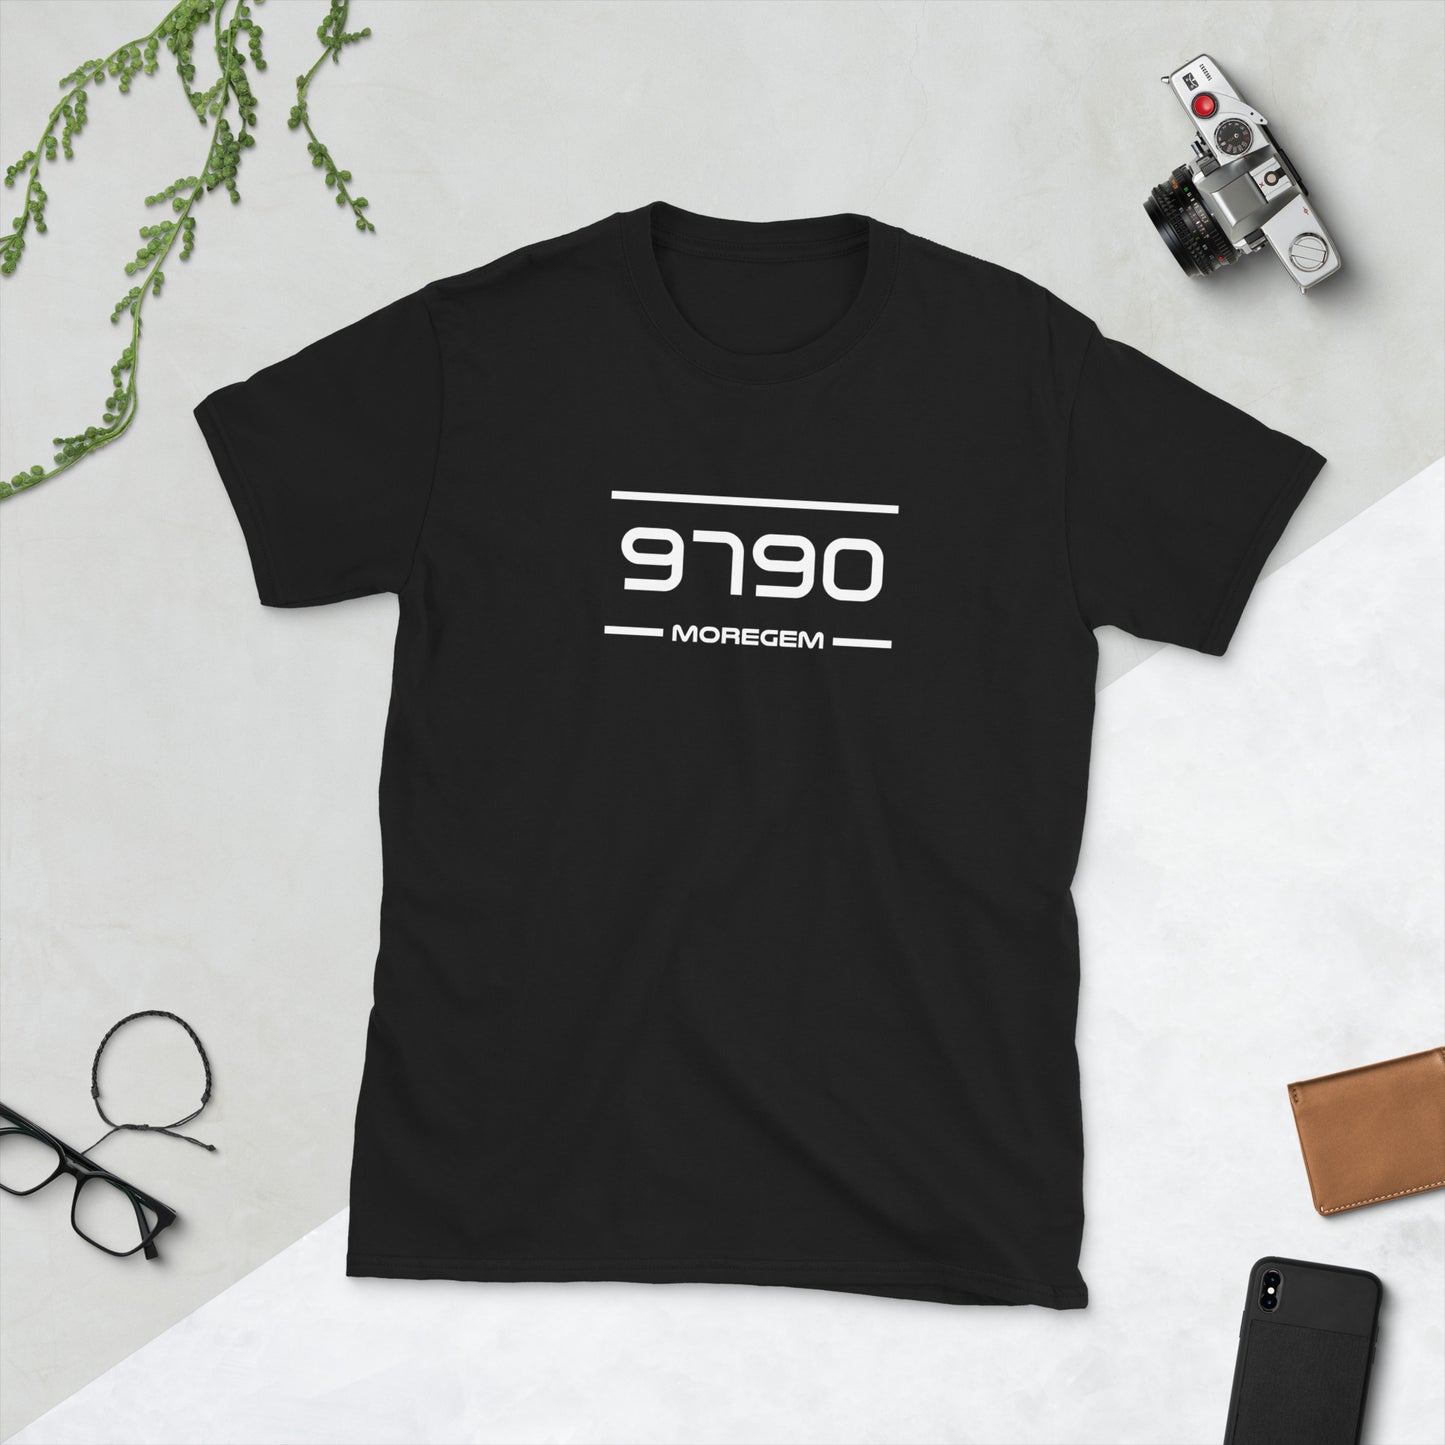 Tshirt - 9790 - Moregem